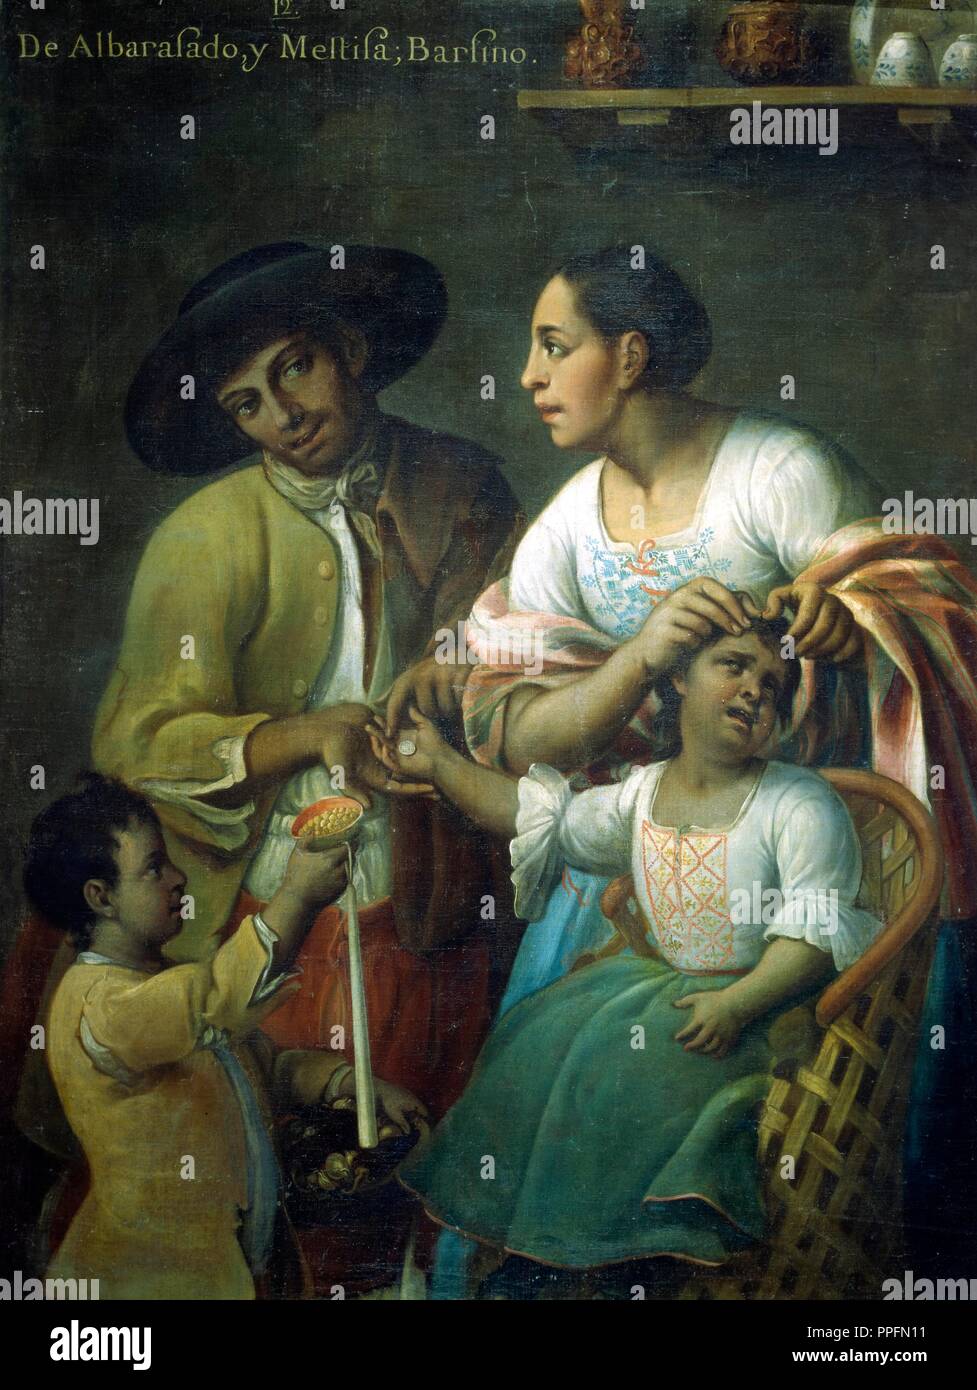 Miguel Cabrera / 'De Albarazado y Mestiza: Barzino', 1763. Museum: MUSEO DE AMERICA. Stock Photo